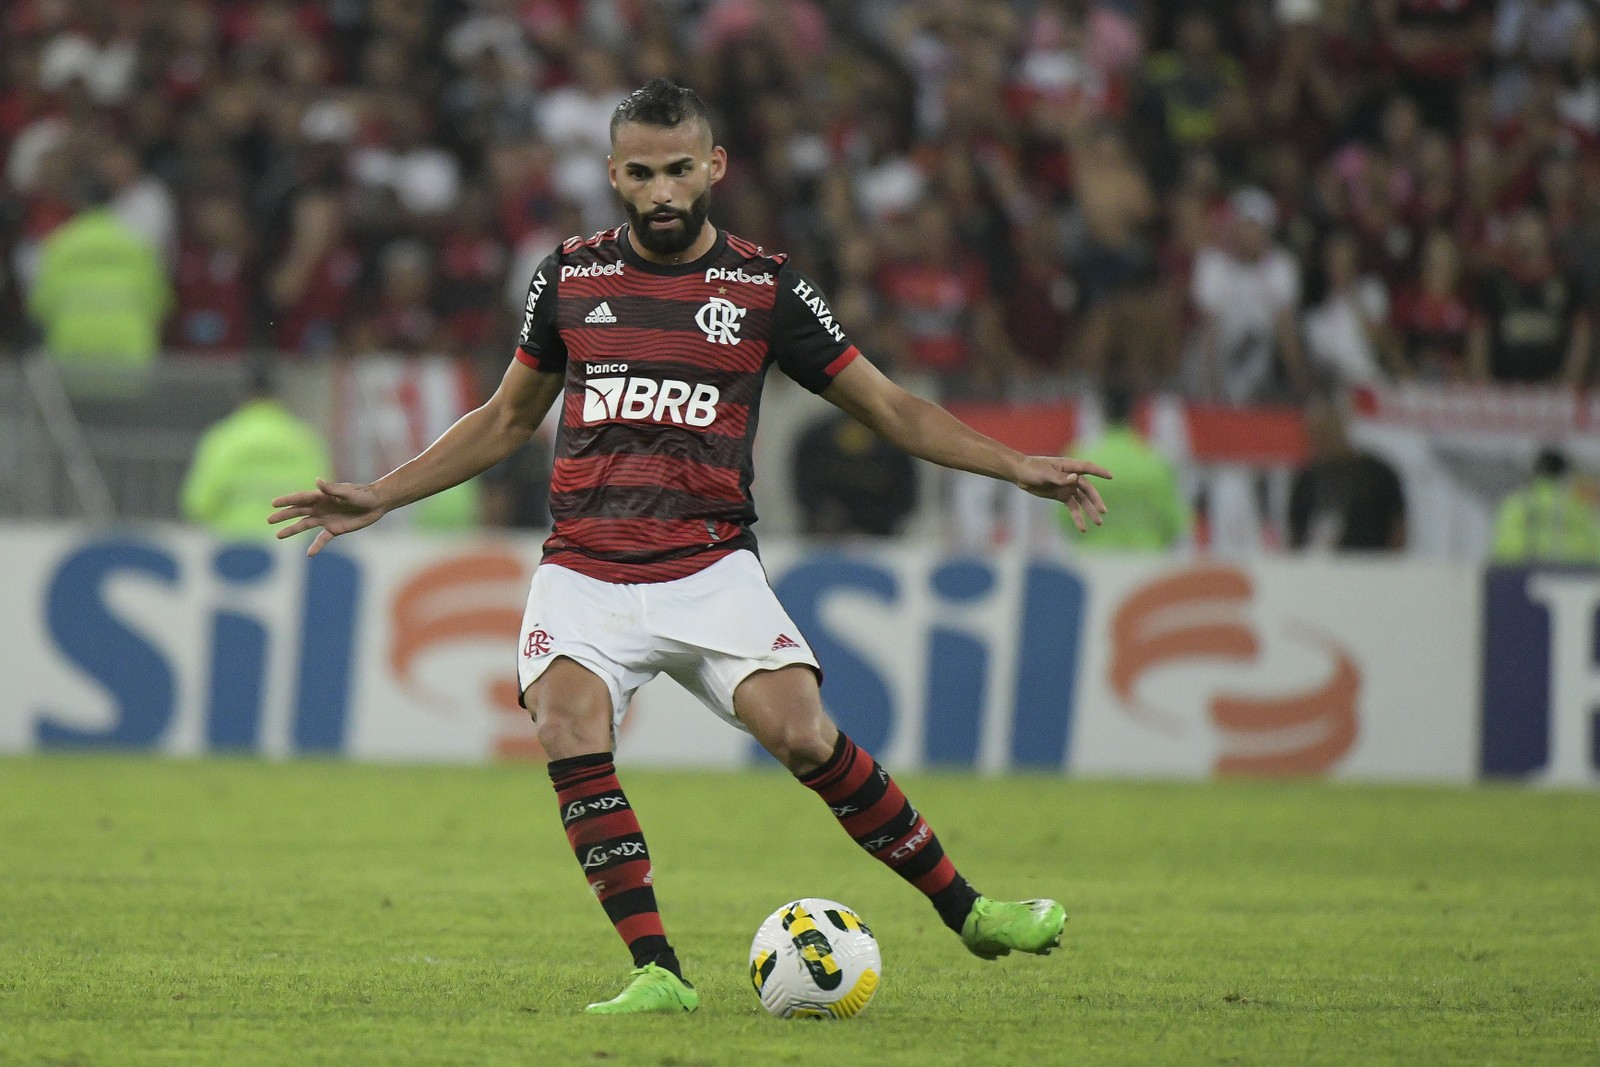 Outro medalhista olímpico atua no Flamengo hoje. O volante Thiago Maia, jogava no Santos, em 2016 — Foto: Alexandre Vidal / Flamengo